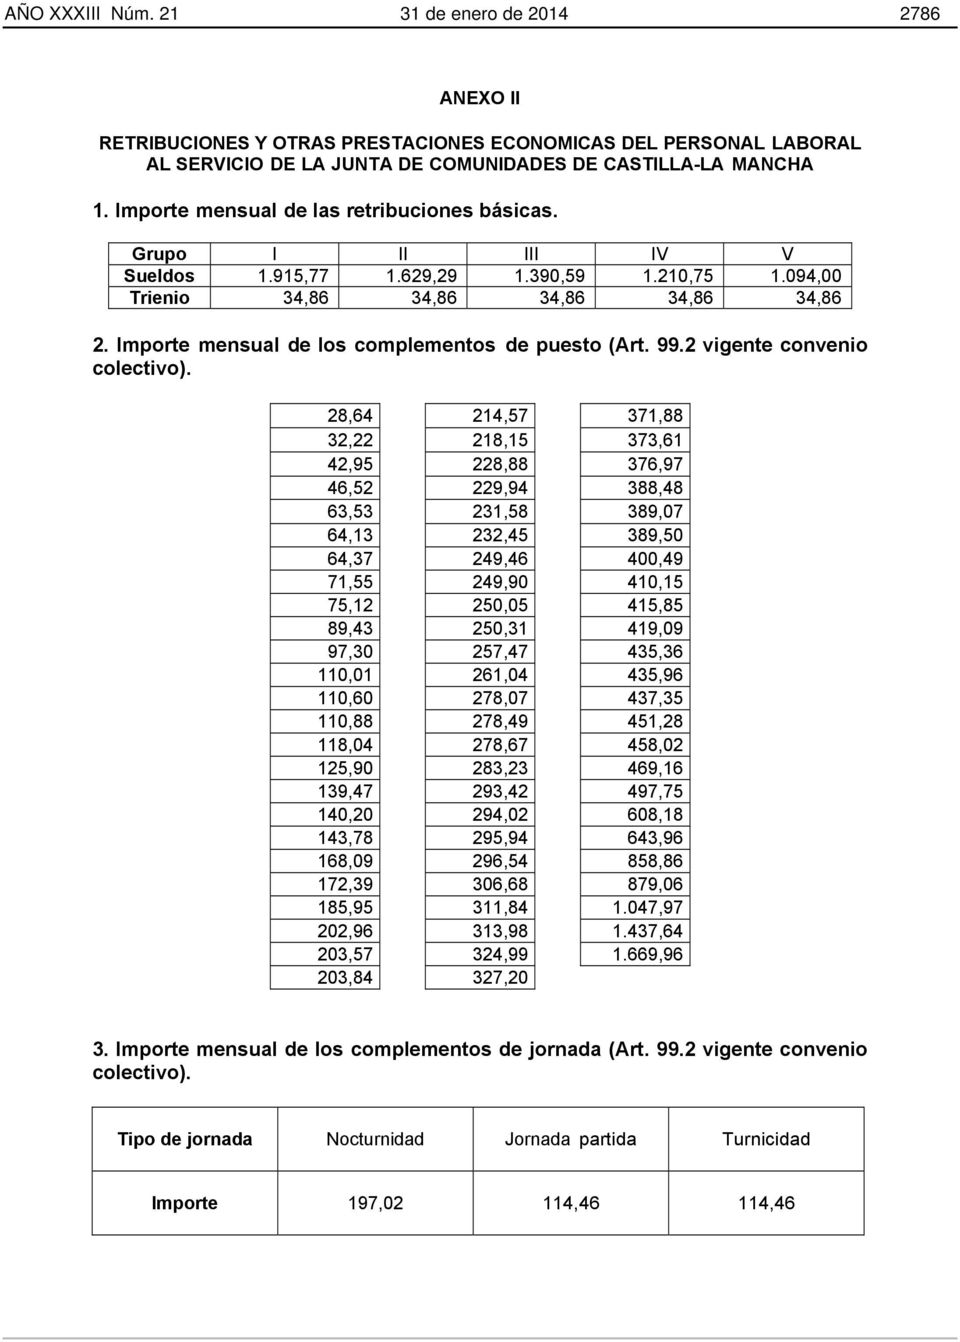 Importe mensual de los complementos de puesto (Art. 99.2 vigente convenio colectivo).